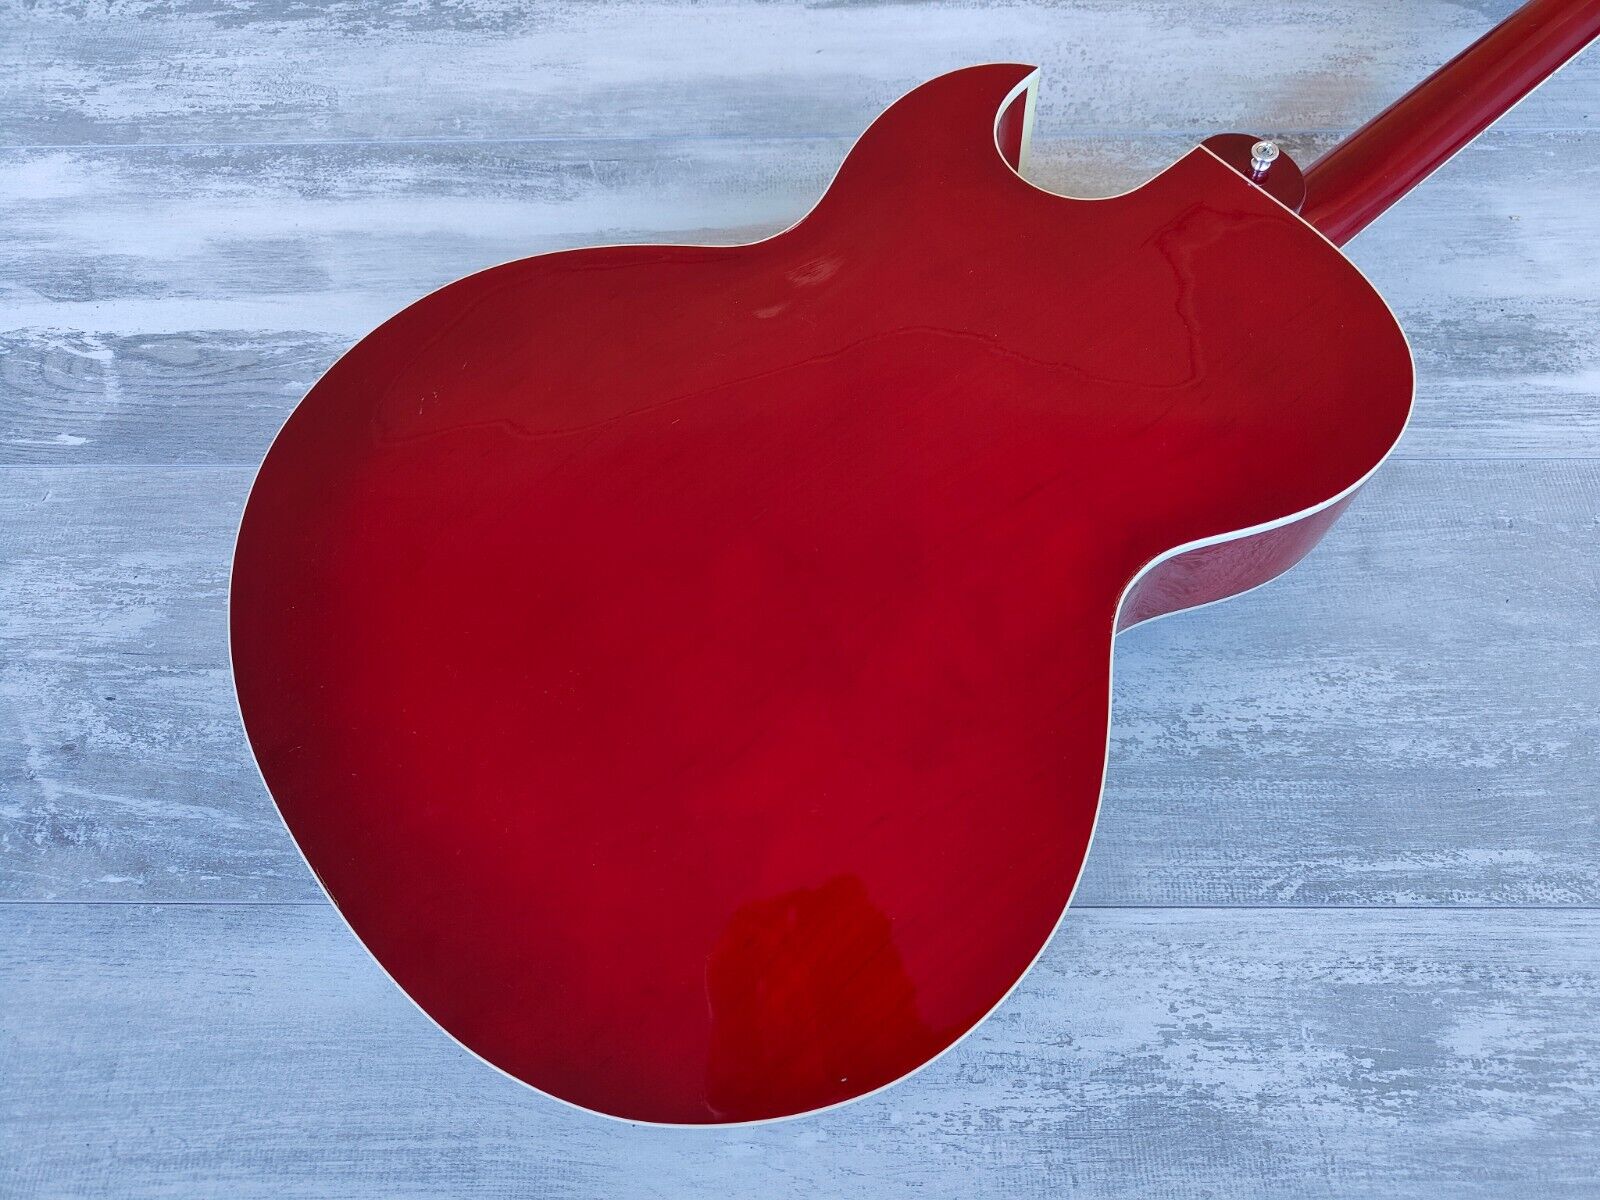 2011 Edwards Japan (by ESP) E-FA-200MA (ES-175) Hollowbody Guitar (Red)